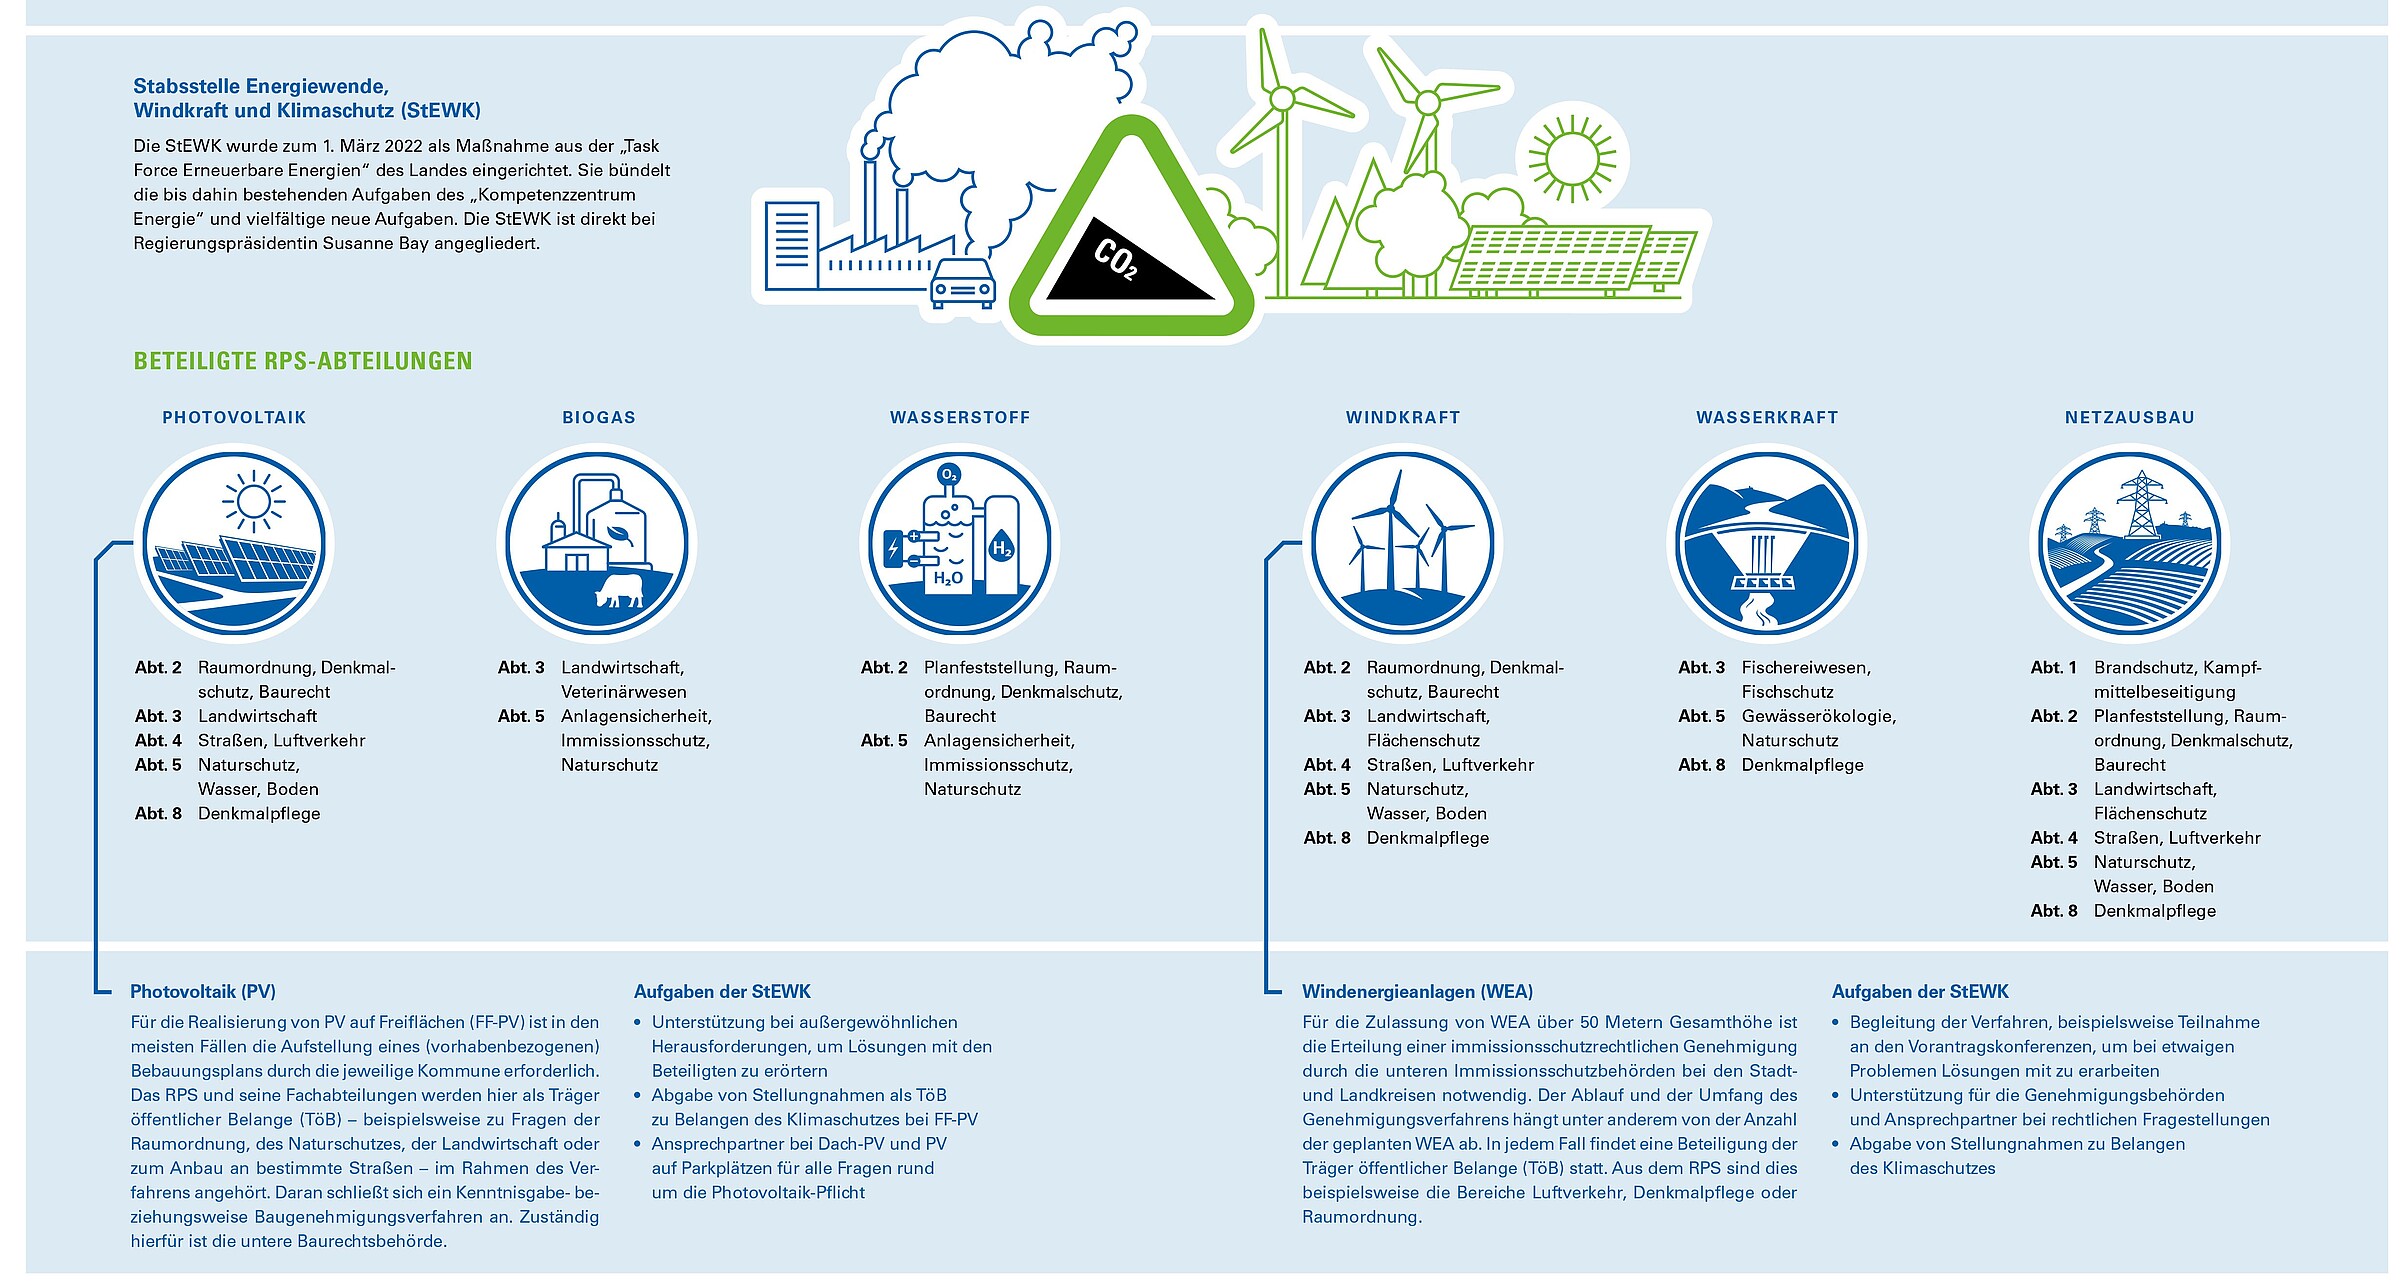 Schaubild zeigt Aufgaben der Stabsstelle Energiewende, Windkraft und Klimaschutz (StEWK)